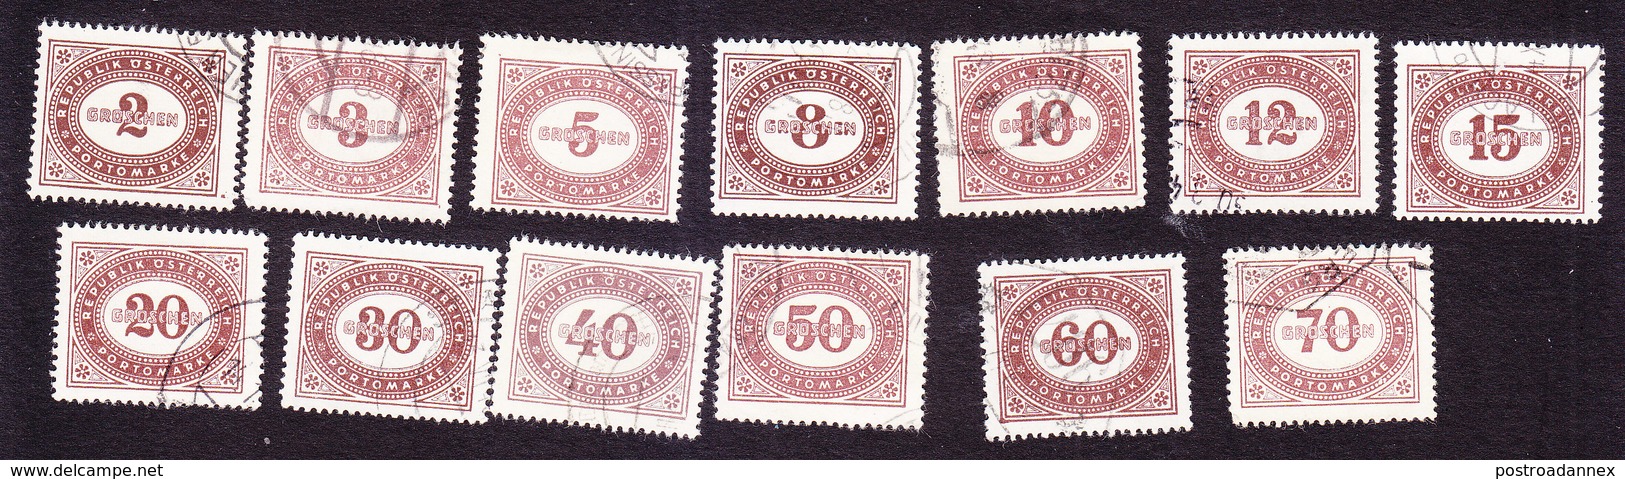 Austria, Scott #J205-J211, J215, J217, J219, J222-J224, Used, Postage Due, Issued 1947 - Taxe